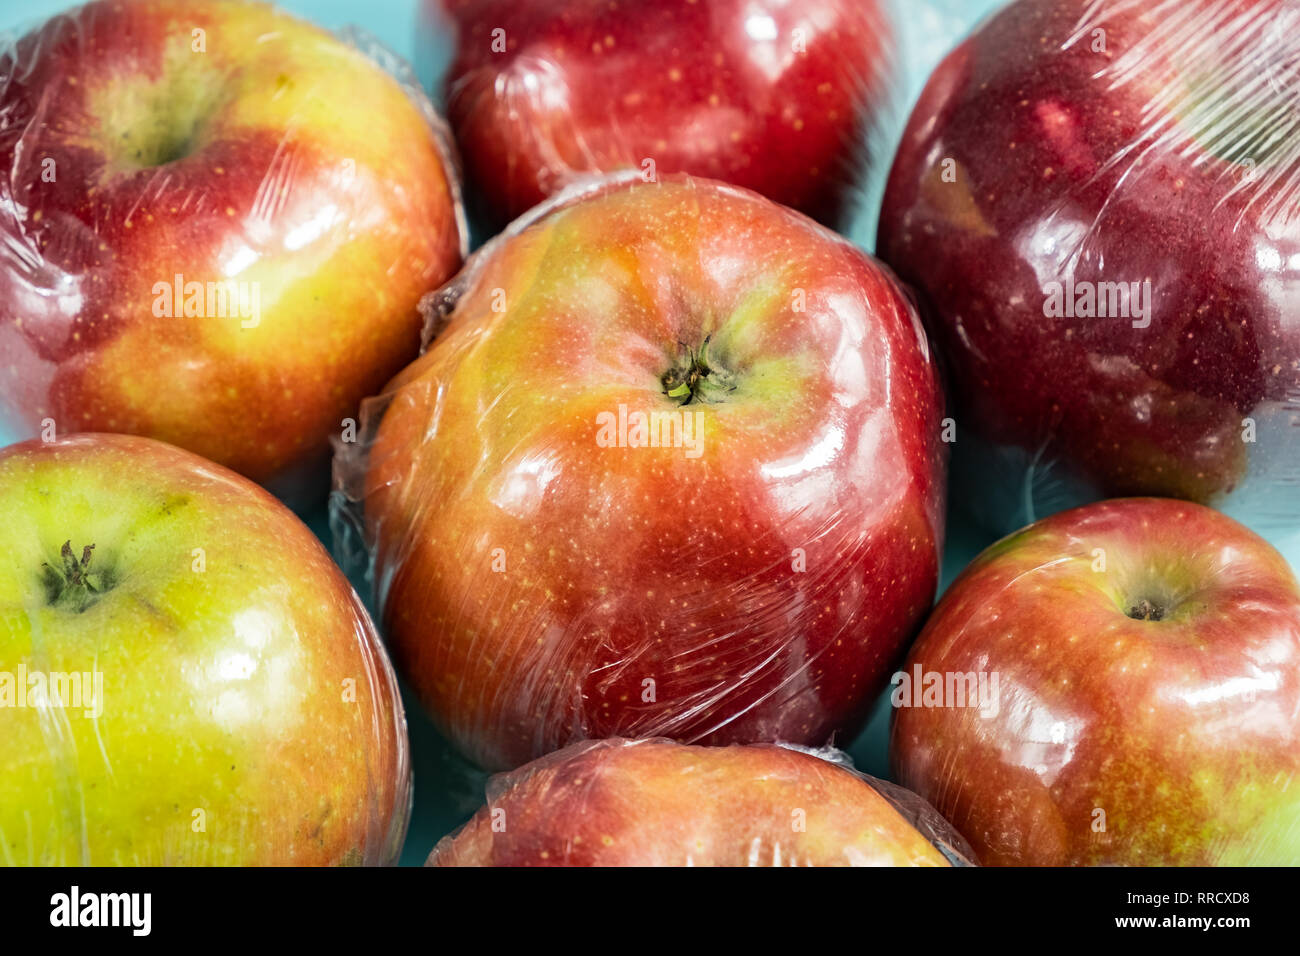 Concept d'utilisation de plastique excessive : pommes fraîches dans la cuisine d'enrubannage. Plus injustifié des produits alimentaires préemballés : fruits frais dans l'emballage plastique, close-up view Banque D'Images